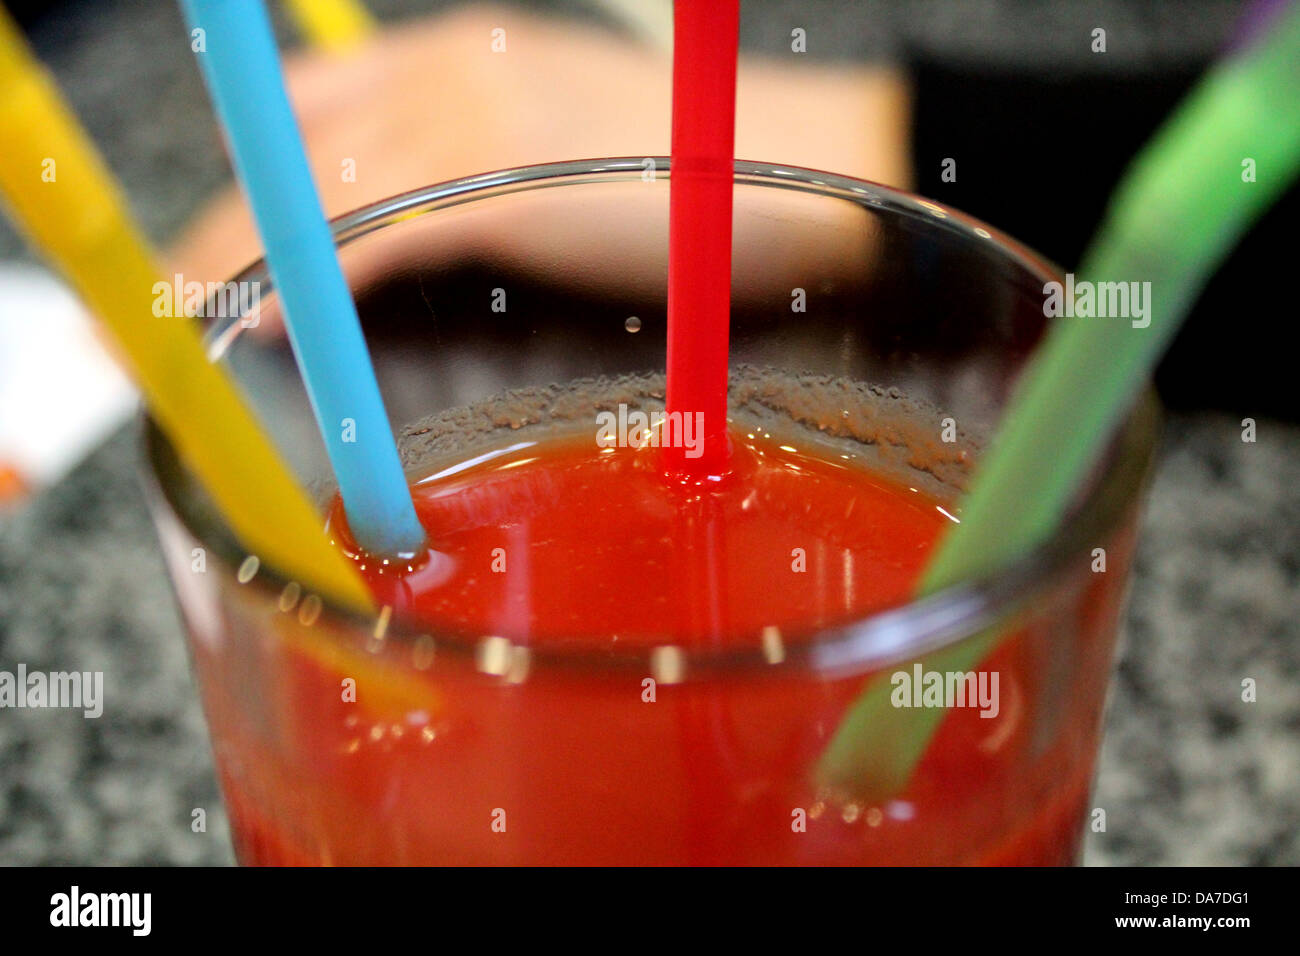 Immagine del bicchiere di succo di pomodoro con multi-tubuli colorati Foto Stock